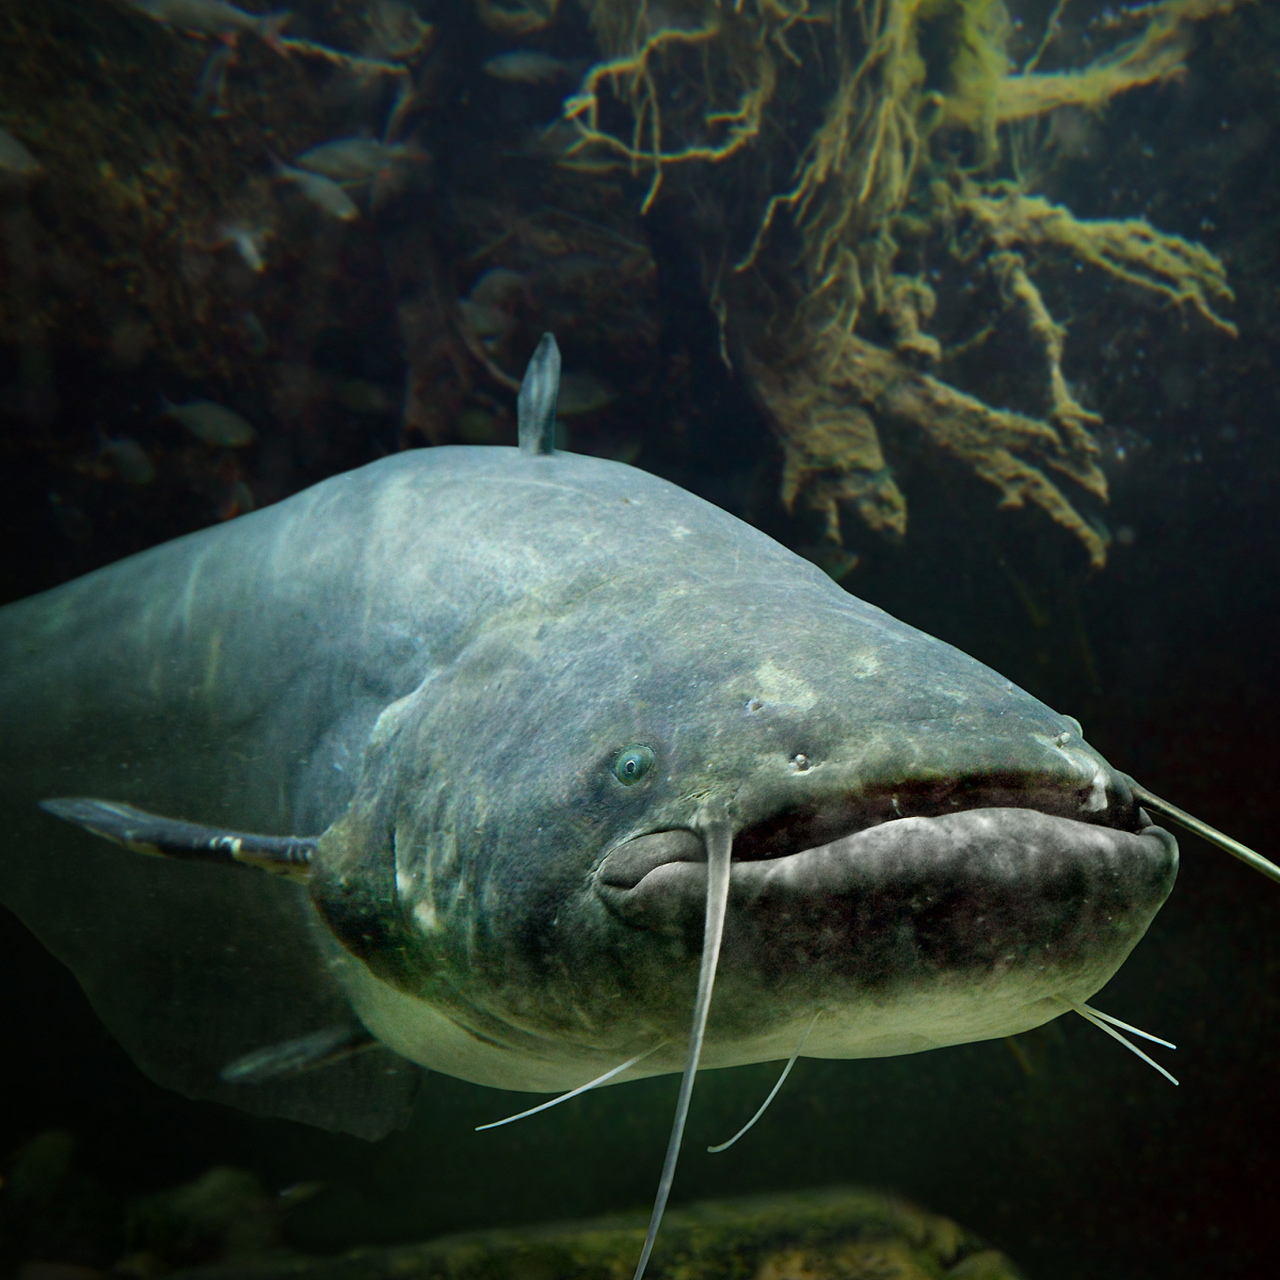 巨骨舌鱼是一种生活在热带和亚热带地区的淡水鱼类,以其独特的外观和